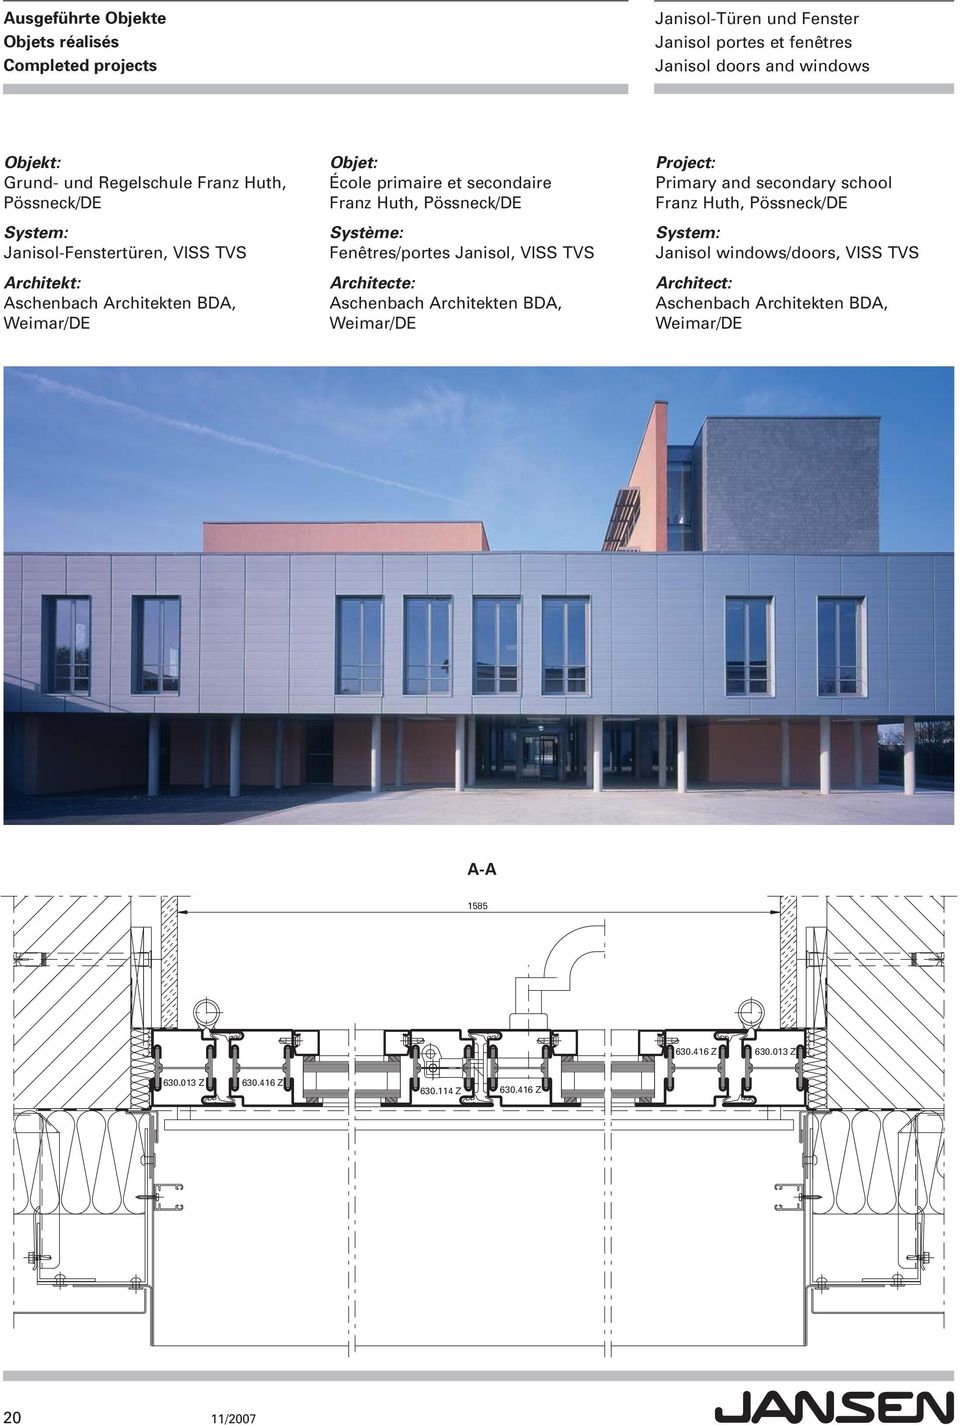 Architekten BDA, Weimar/DE Primary and secondary school Franz Huth, Pössneck/DE Janisol windows/doors, VISS